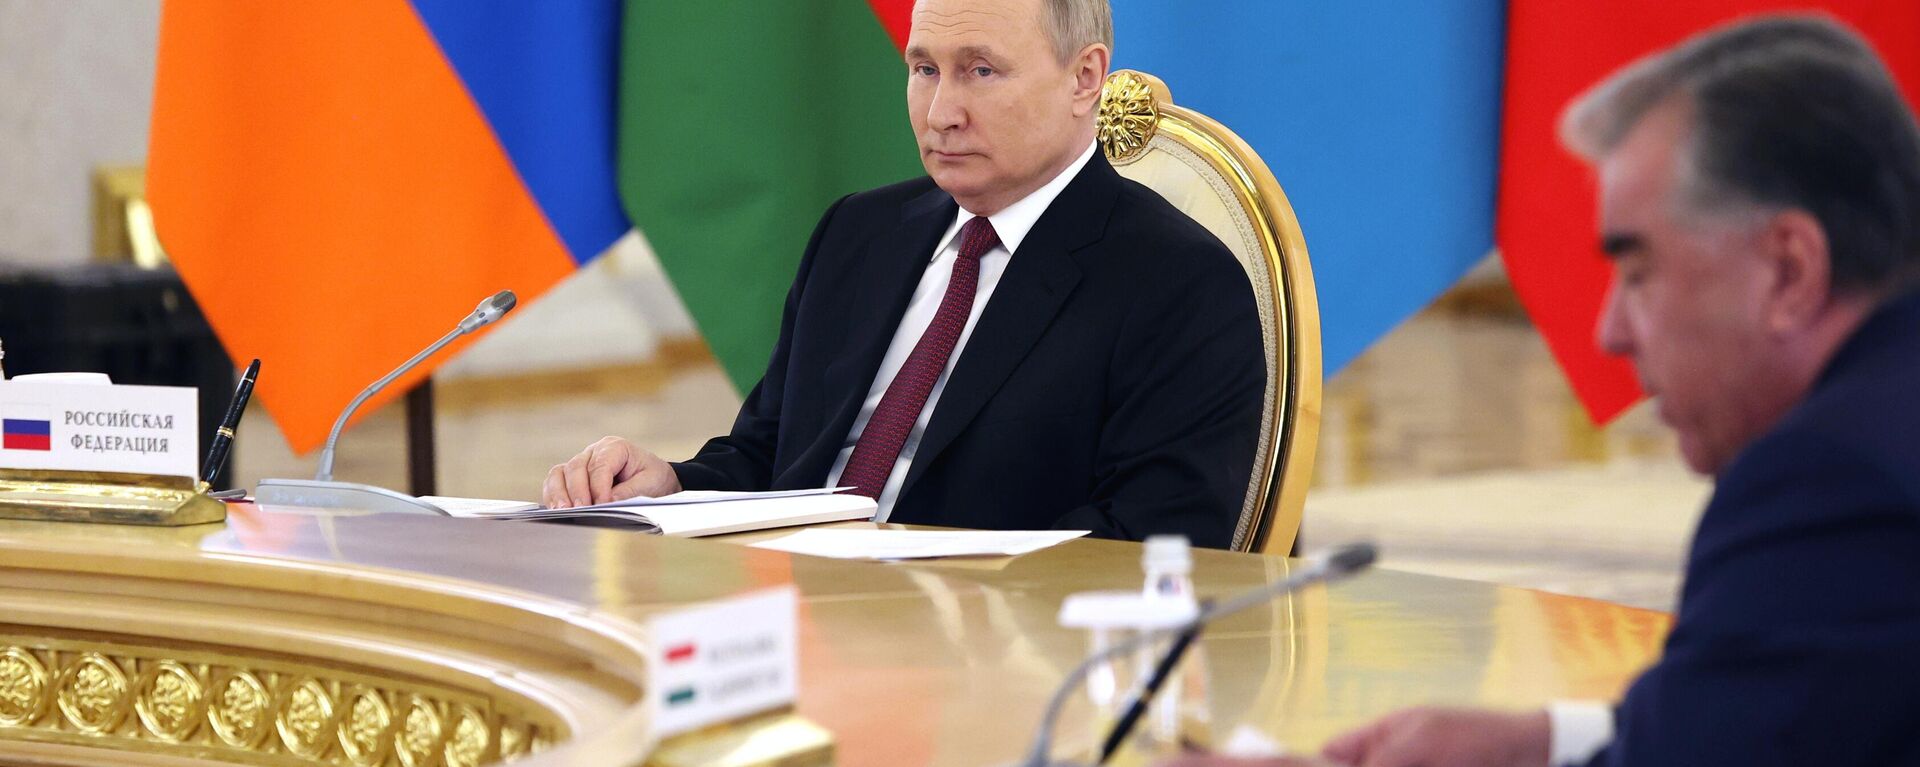 Президент РФ В. Путин принял участие во встреча лидеров государств - членов ОДКБ - Sputnik Абхазия, 1920, 16.05.2022